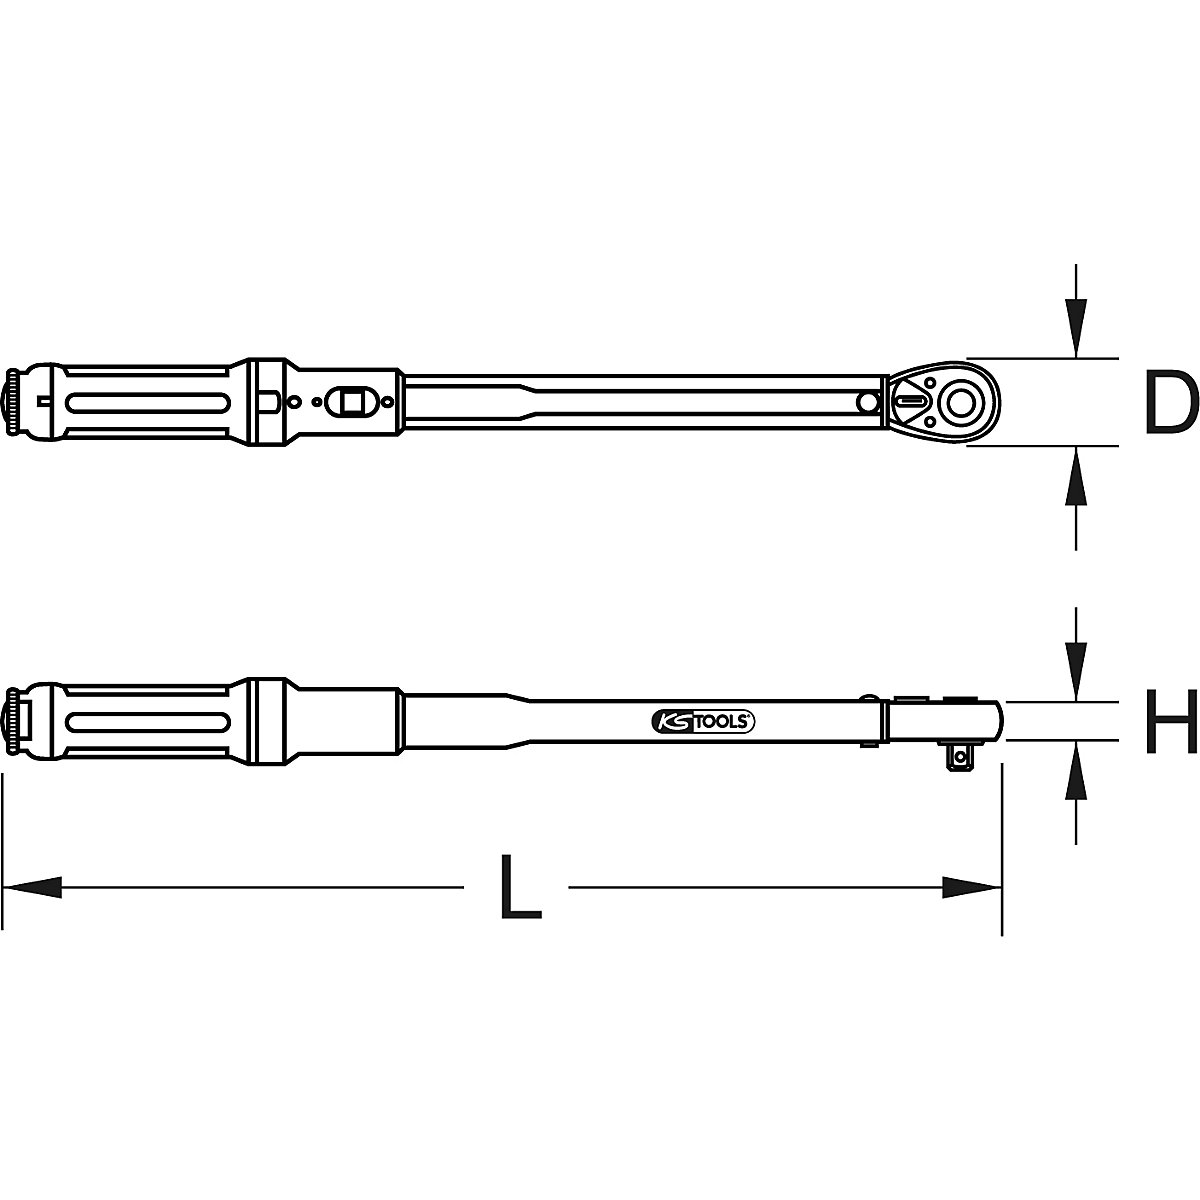 Chiave dinamometrica ERGOTORQUE®precision con testa a cricco reversibile – KS Tools (Foto prodotto 2)-1